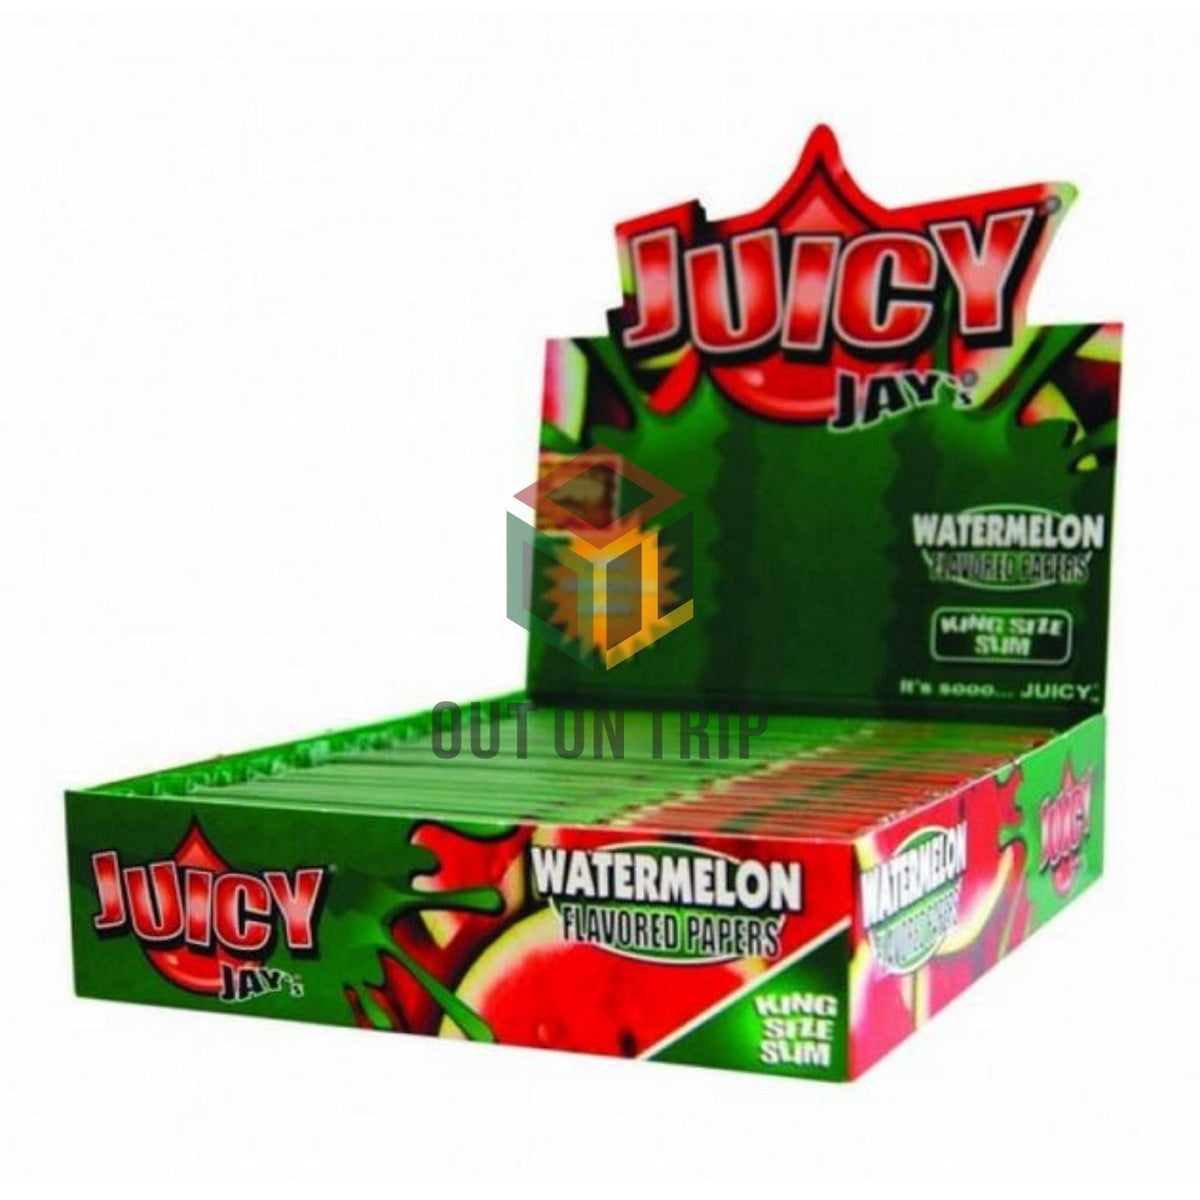 Juicy Jay Rolling Paper - Watermelon Flavor - KSS